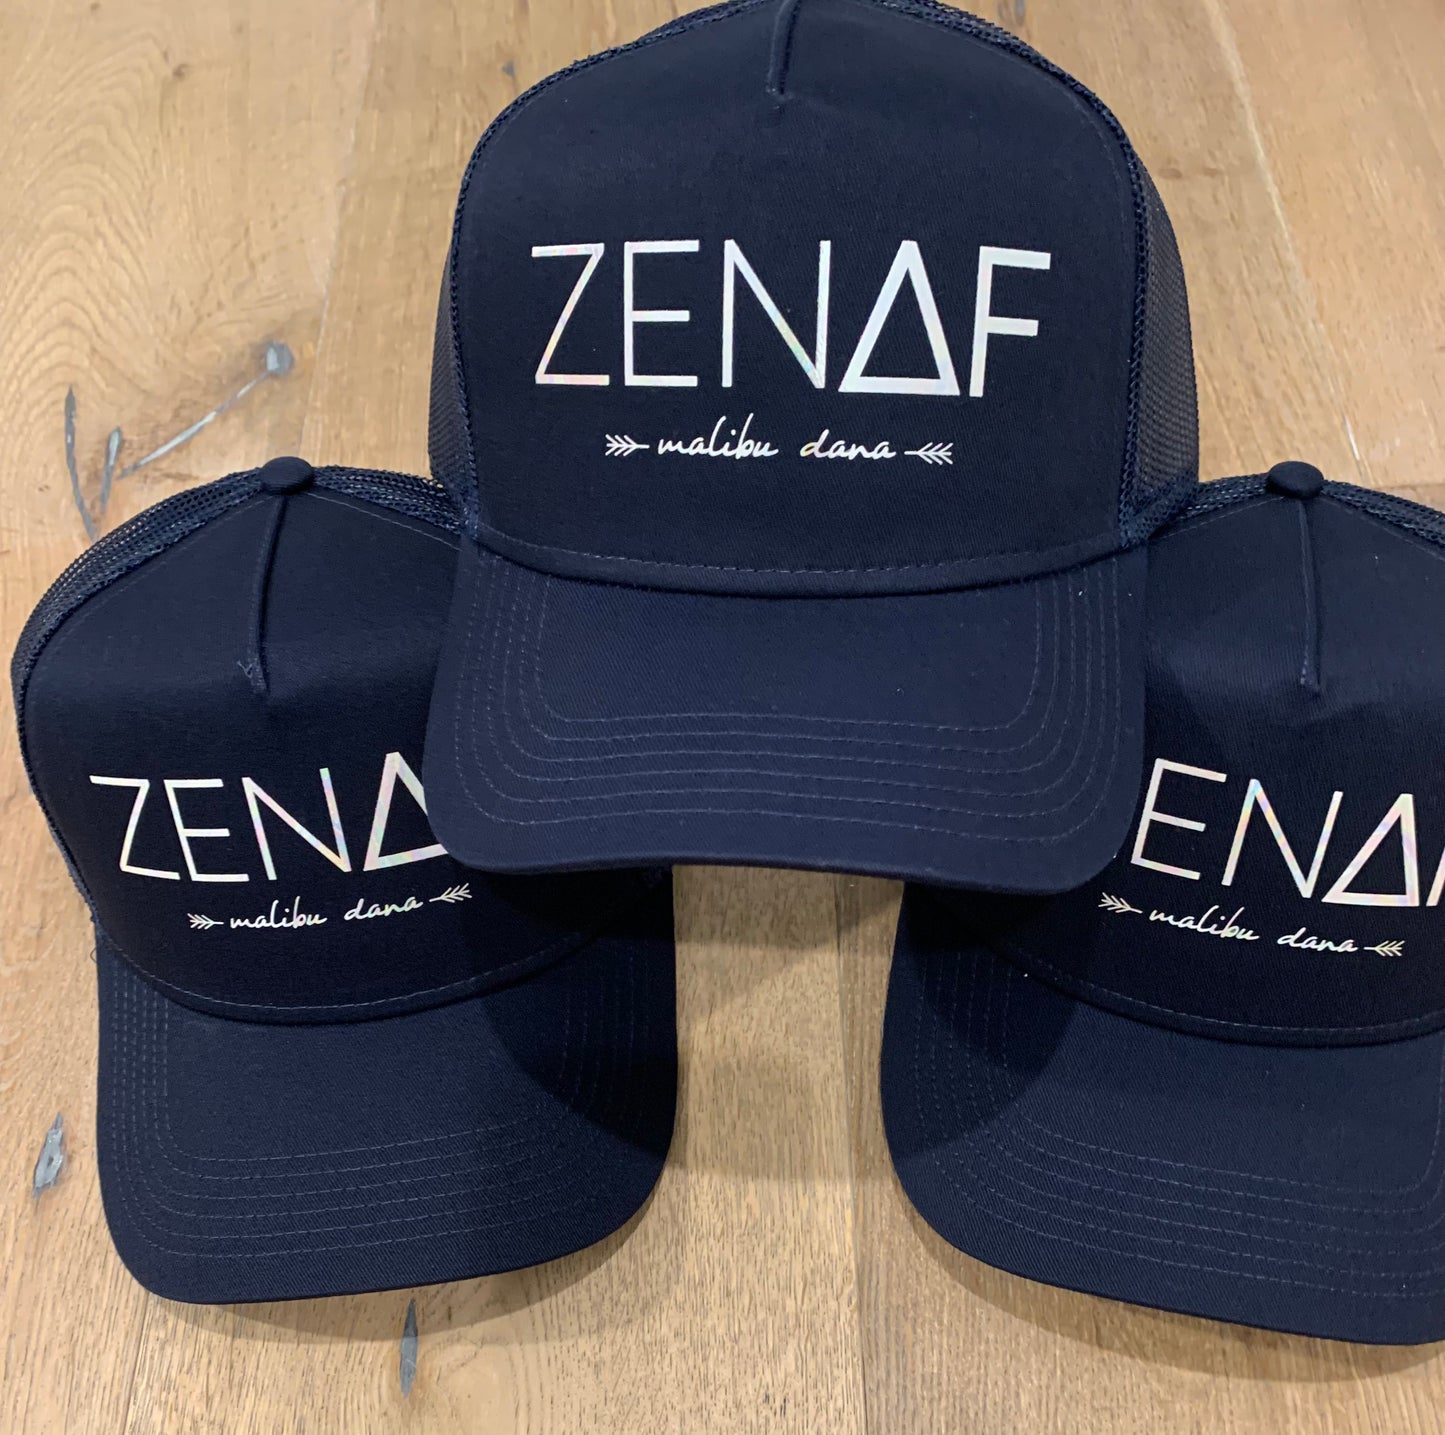 ZenAF Trucker Hat